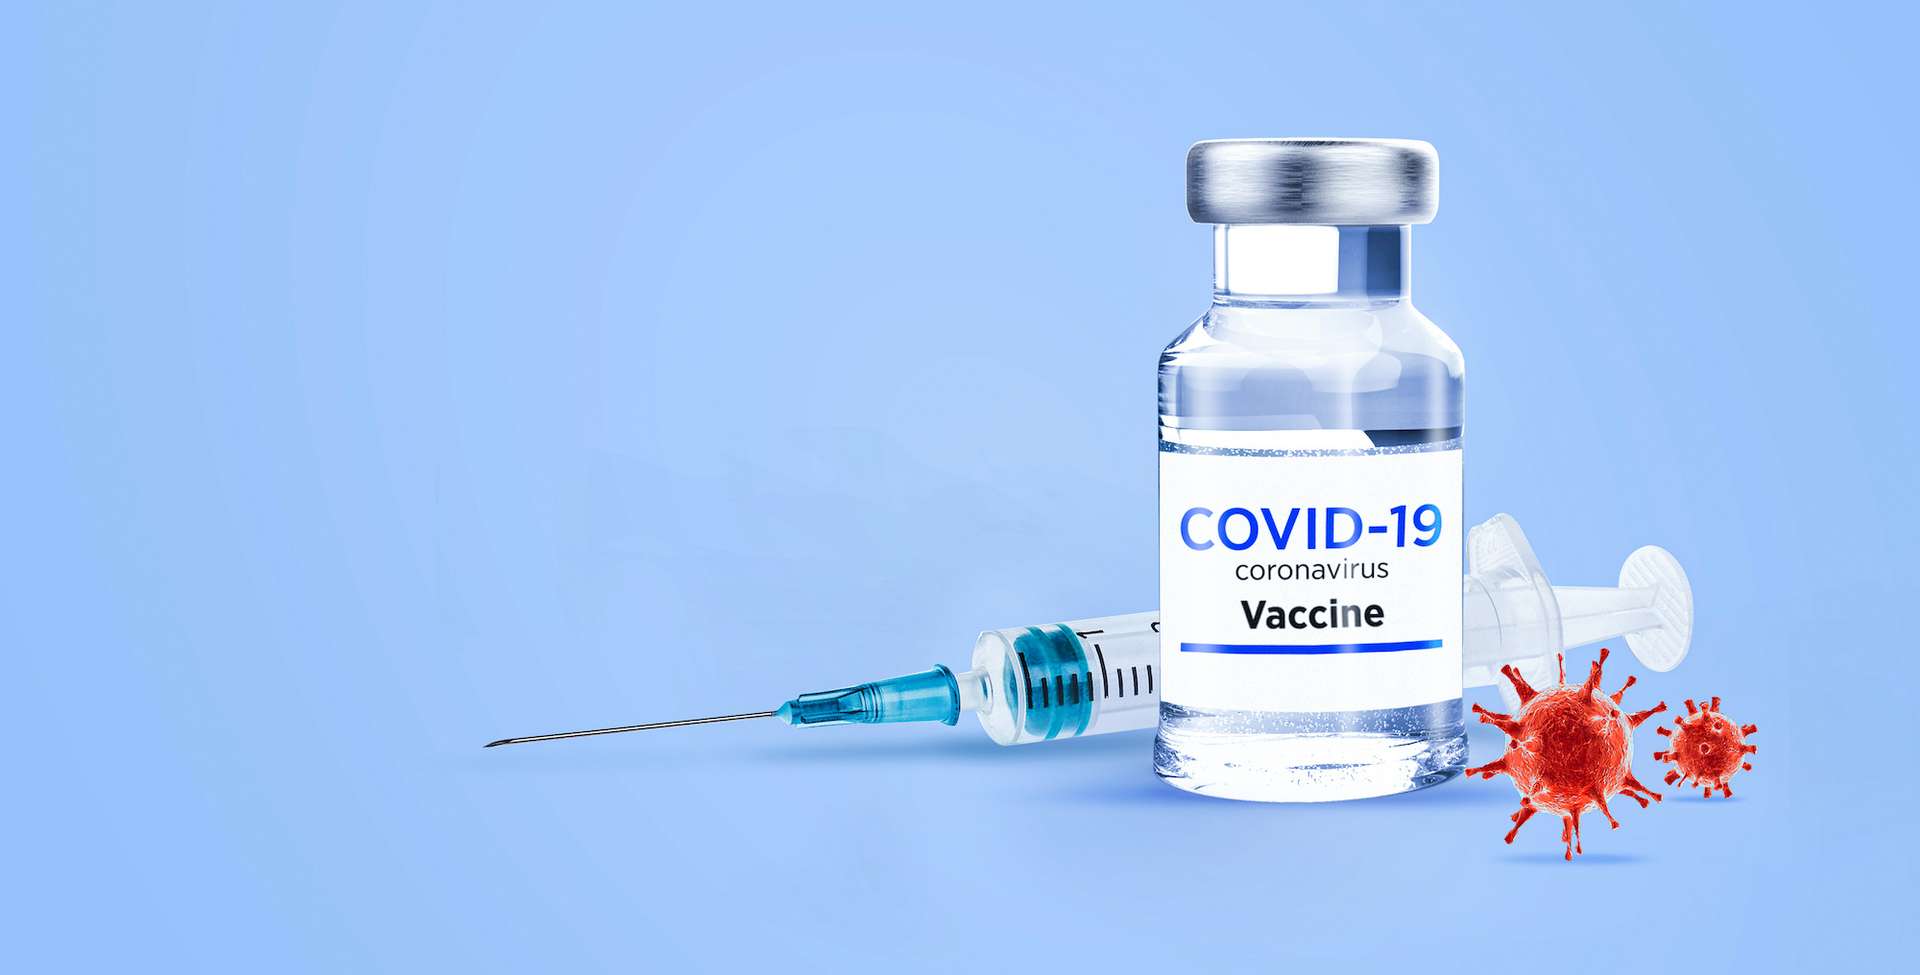 vaccin-coronavirus-ahmet-aglamaz-adobe-stock